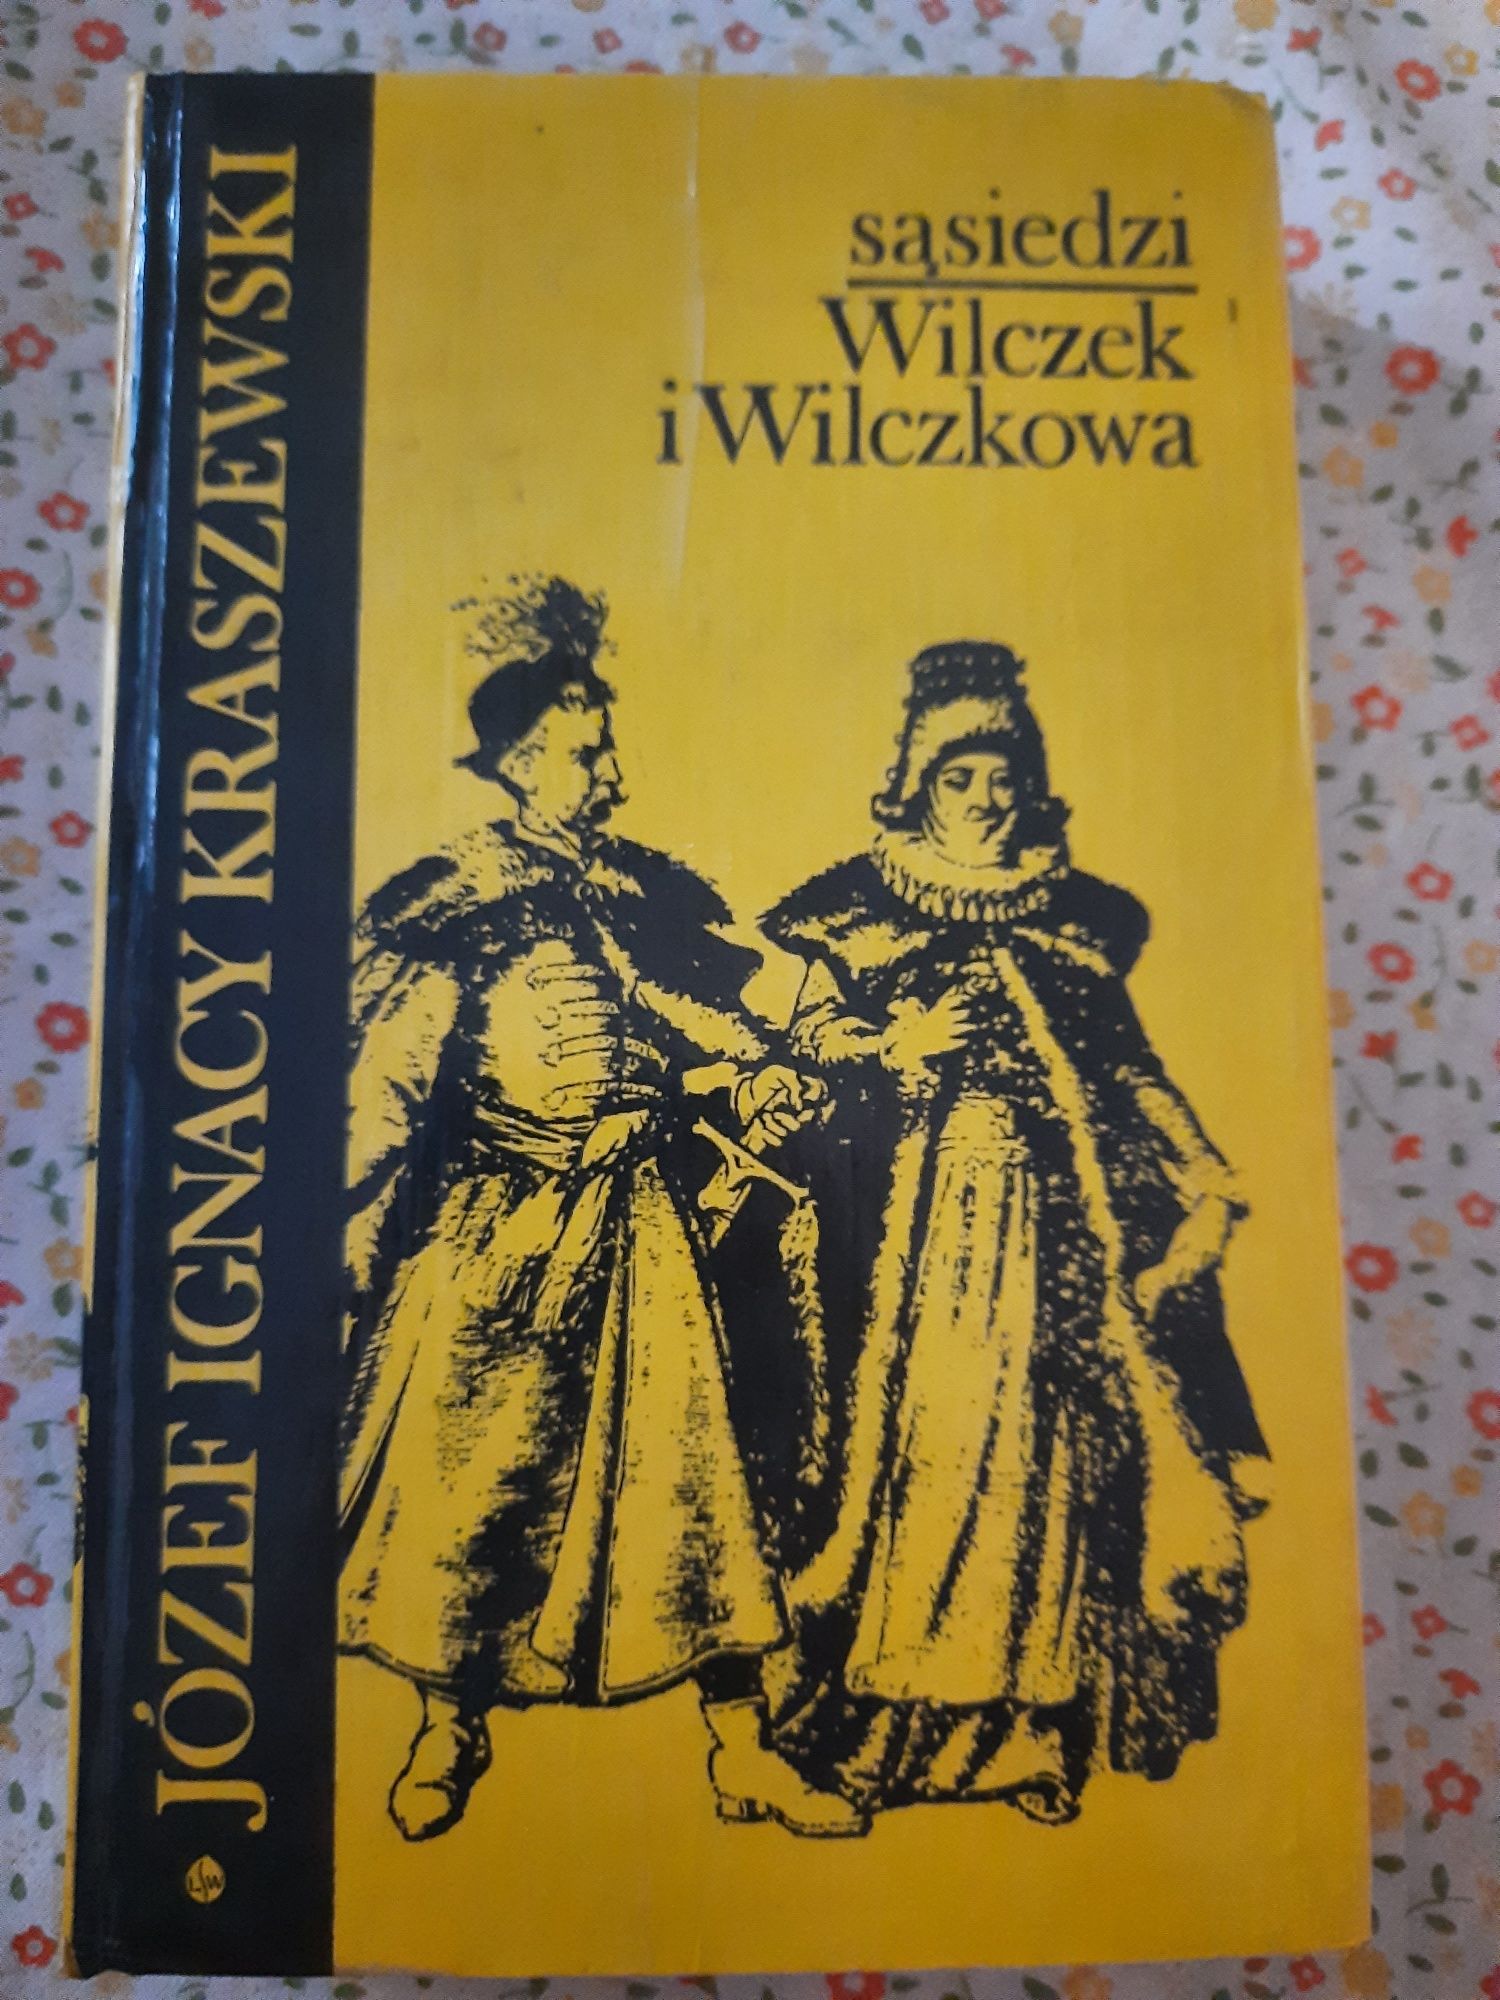 Kraszewski "Sąsiedzi Wilczek i Wilczkowa"